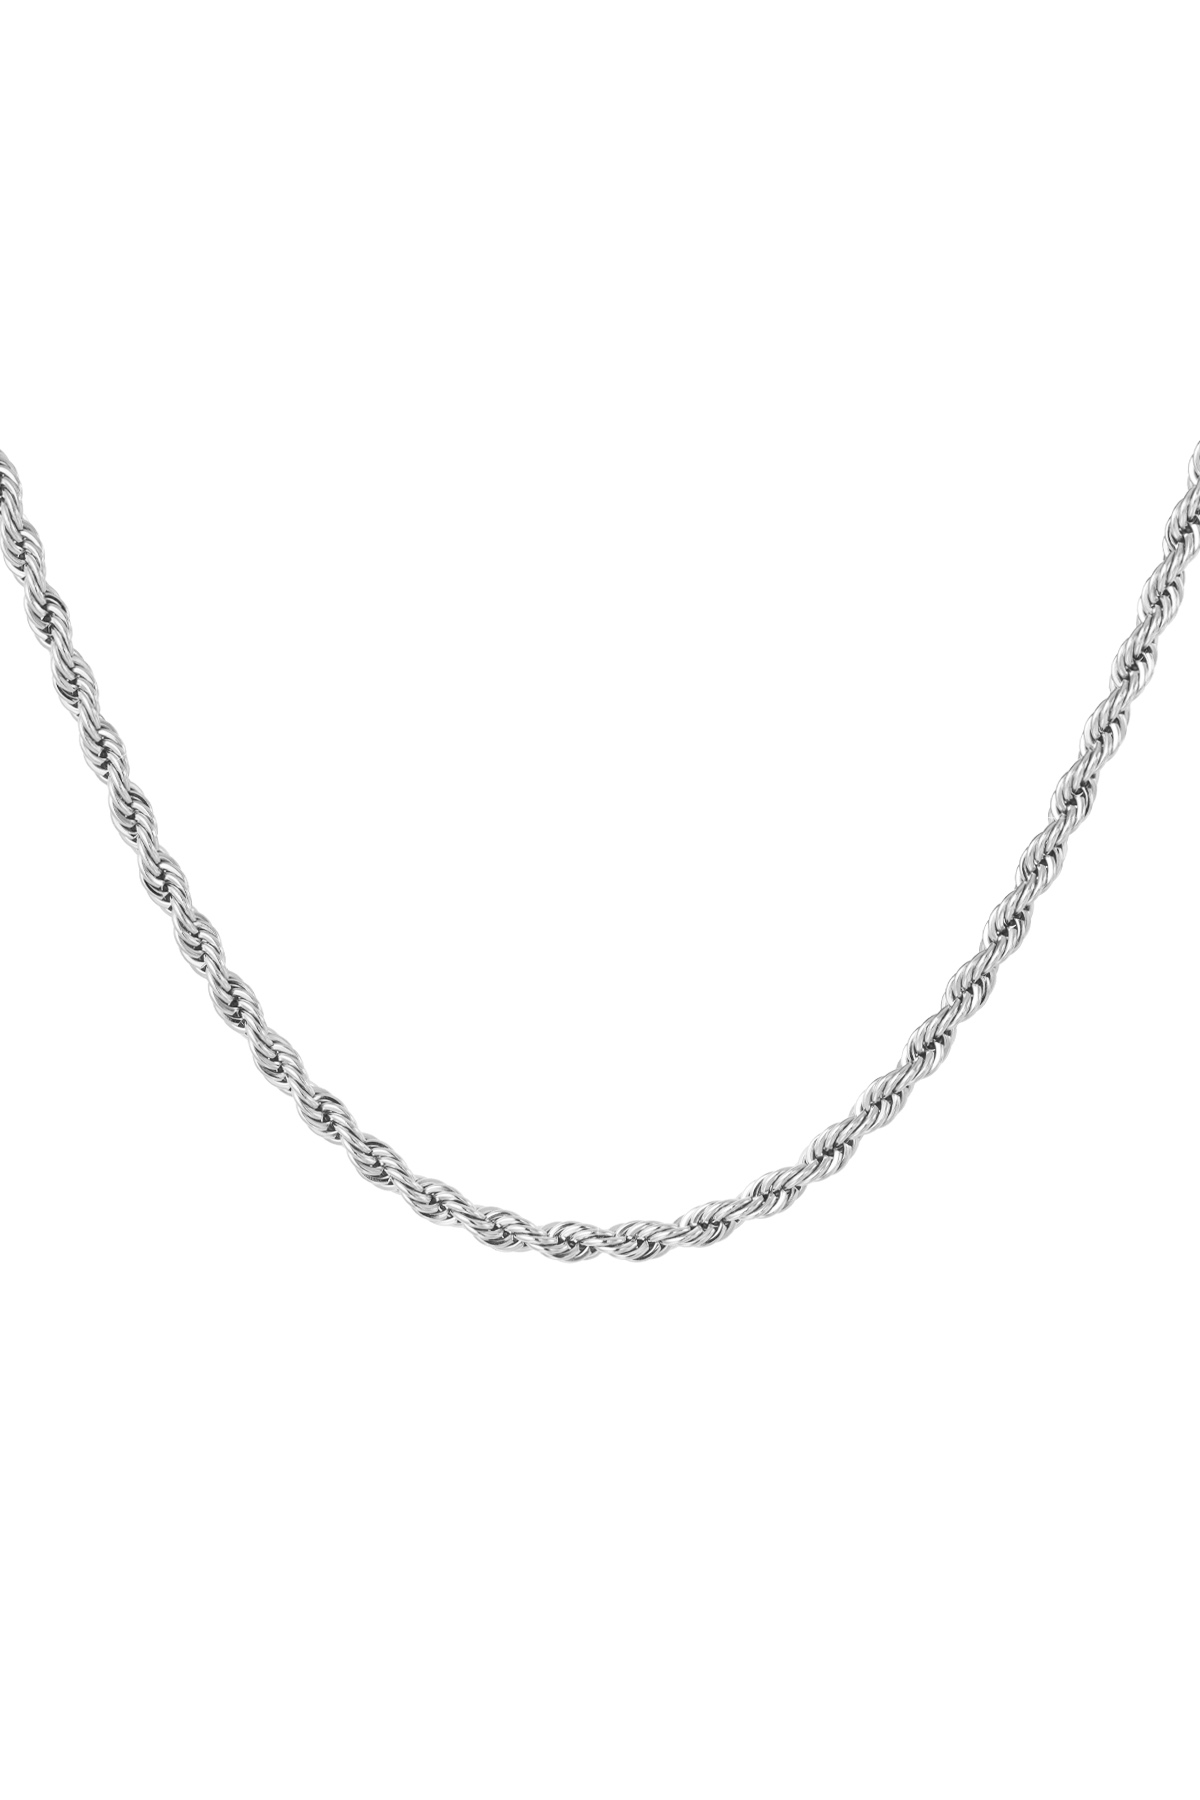 Collana unisex intrecciata 50 cm - argento-4.0MM